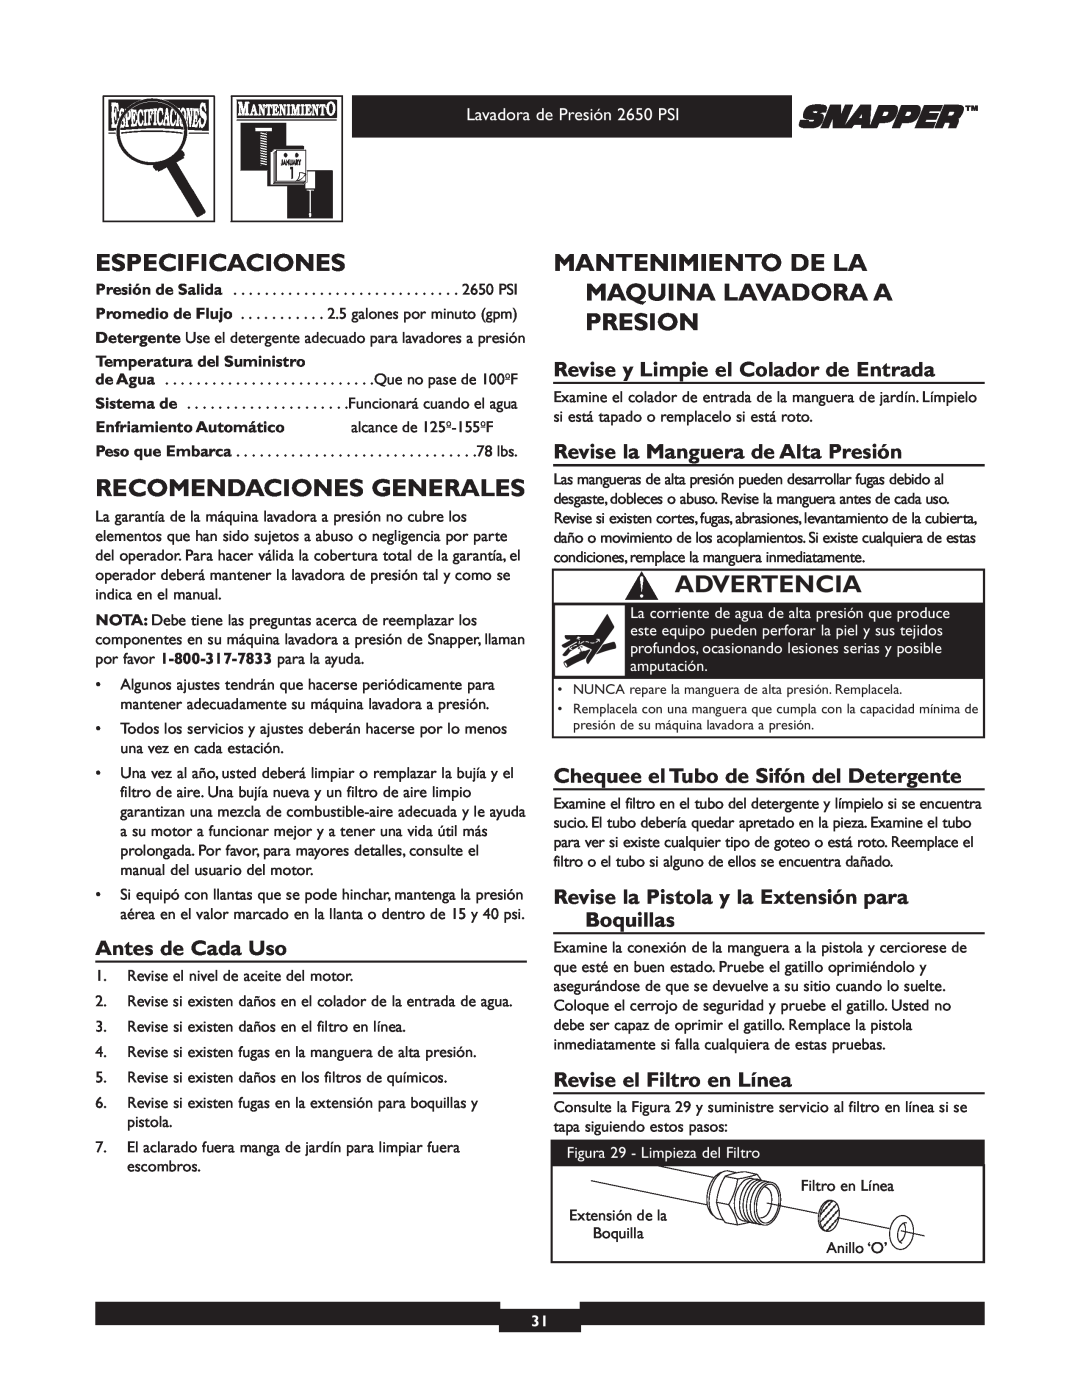 Snapper 020230 Especificaciones, Recomendaciones Generales, Mantenimiento De La Maquina Lavadora A Presion, Advertencia 